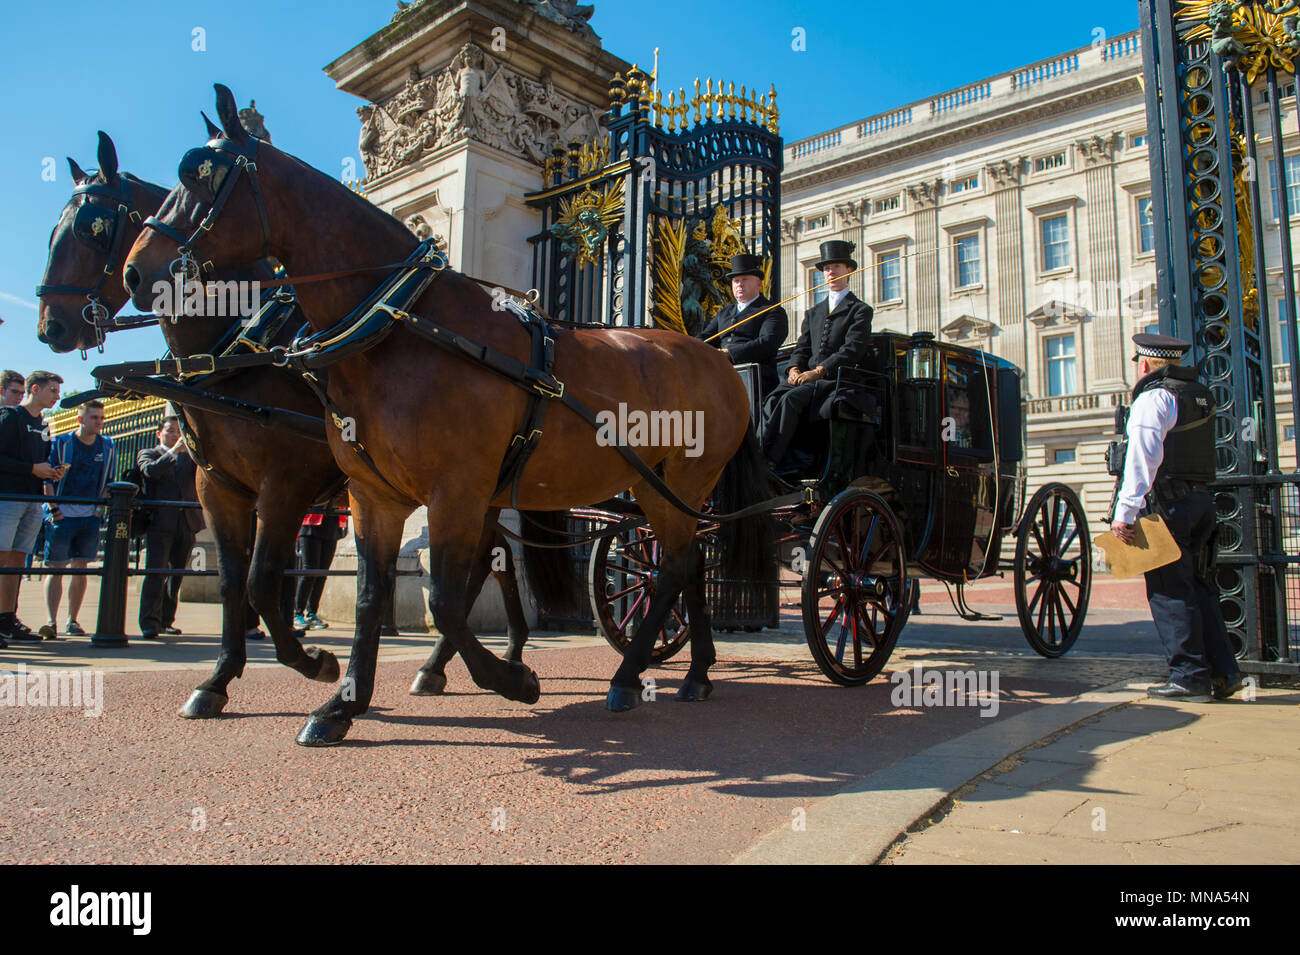 Londres - 15 MAI 2018 : Cheval et un chariot passe hors de l'ornate gates Buckingham Palace Banque D'Images